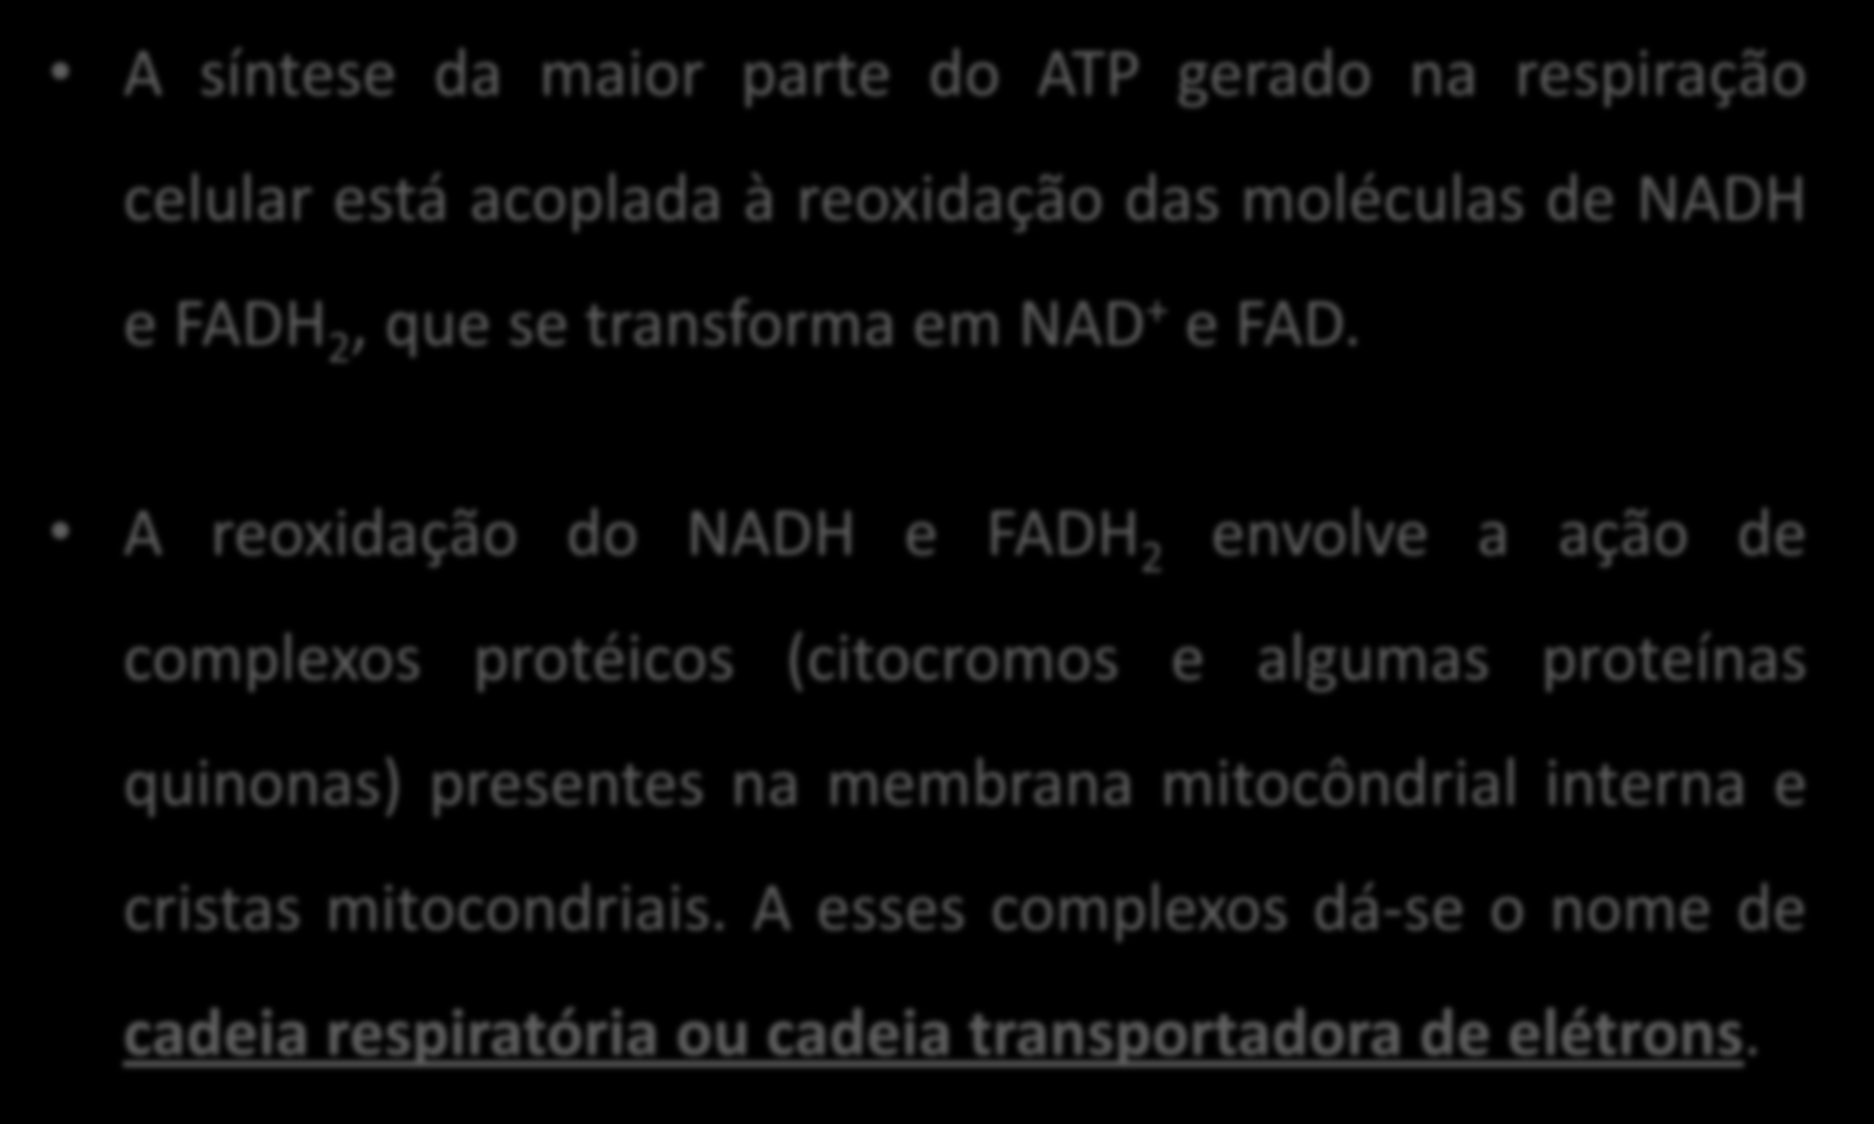 FOSFORILAÇÃO OXIDATIVA A síntese da maior parte do ATP gerado na respiração celular está acoplada à reoxidação das moléculas de NADH e FADH 2, que se transforma em NAD + e FAD.